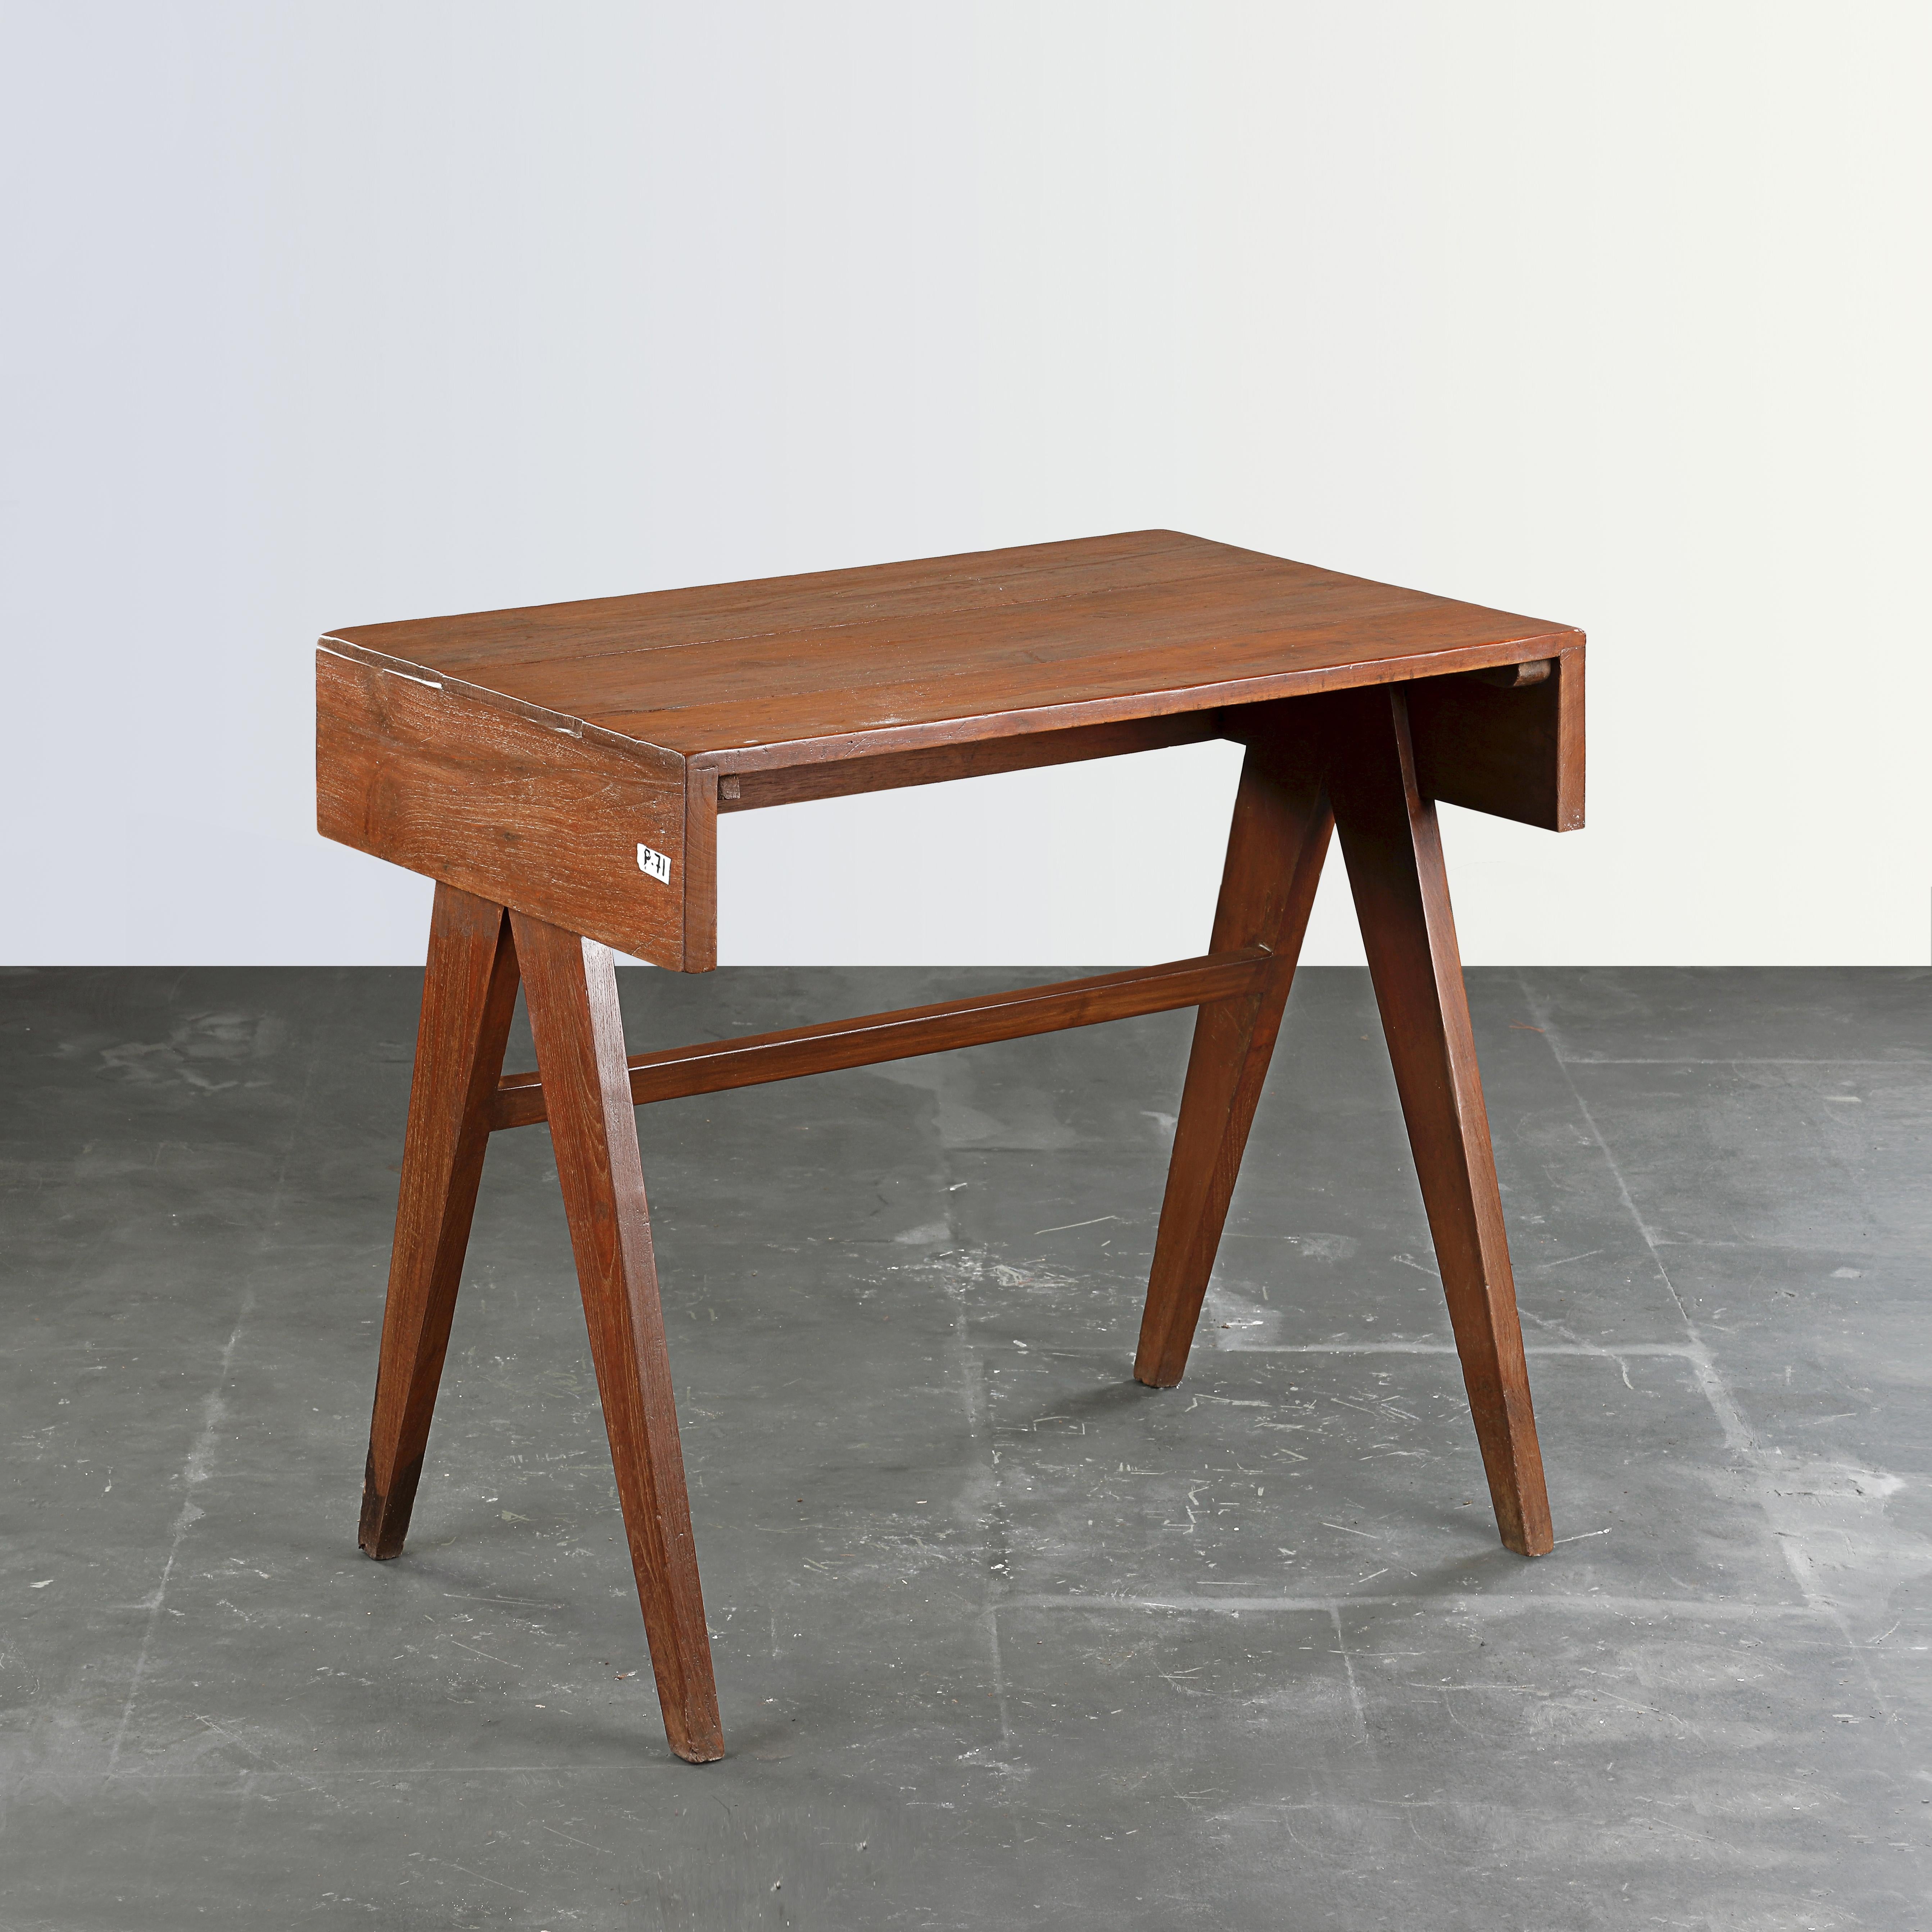 Dieser Schreibtisch ist eine Ikone des Designs. Es ist roh in seiner Einfachheit zeigt es ein leicht patiniertes Material. Die Form ist schön zerbrechlich und hat eine wunderbare Farbe. Wir restaurieren sie nicht allzu sehr. So bewahren wir so viel